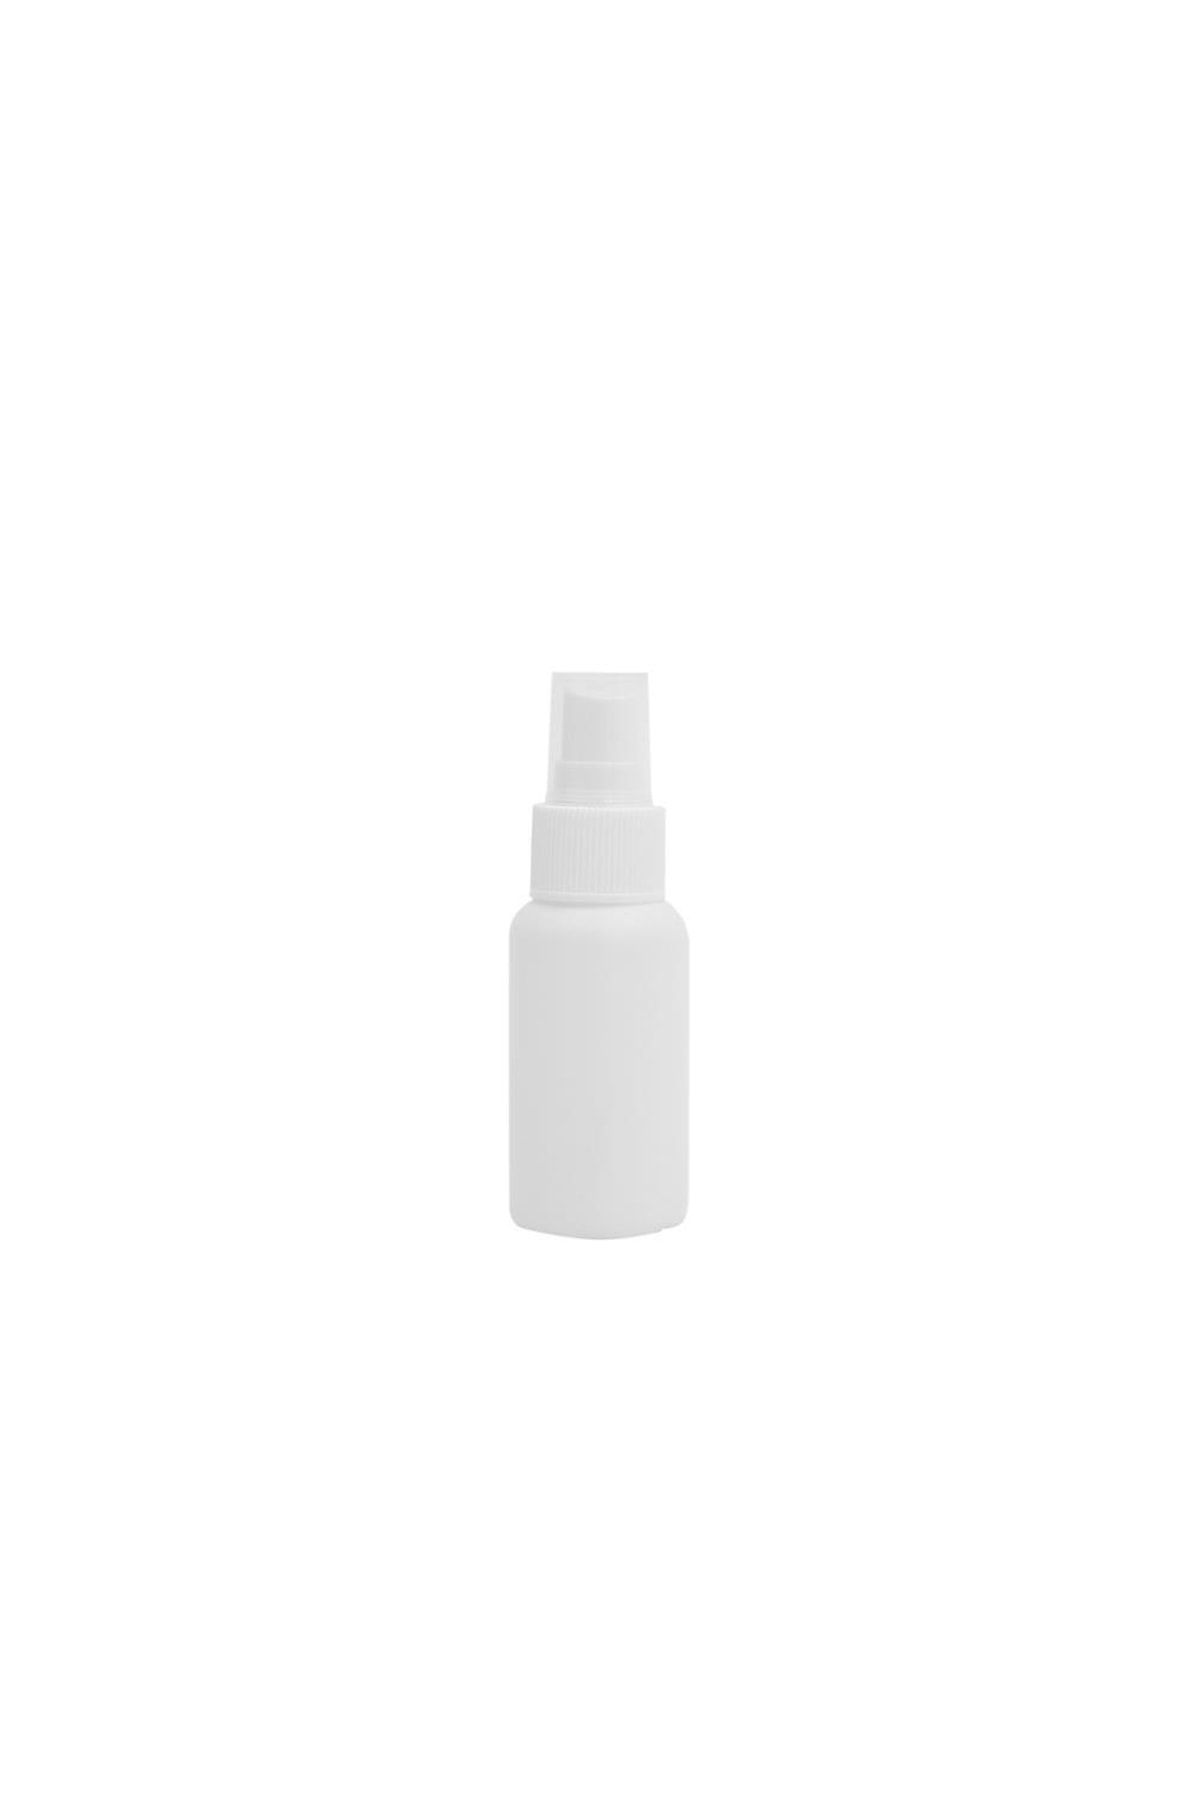 makrobay 50ml-beyaz - Sprey Kapaklı-dezenfektan-kolonya-likit Şişe-10 Adet